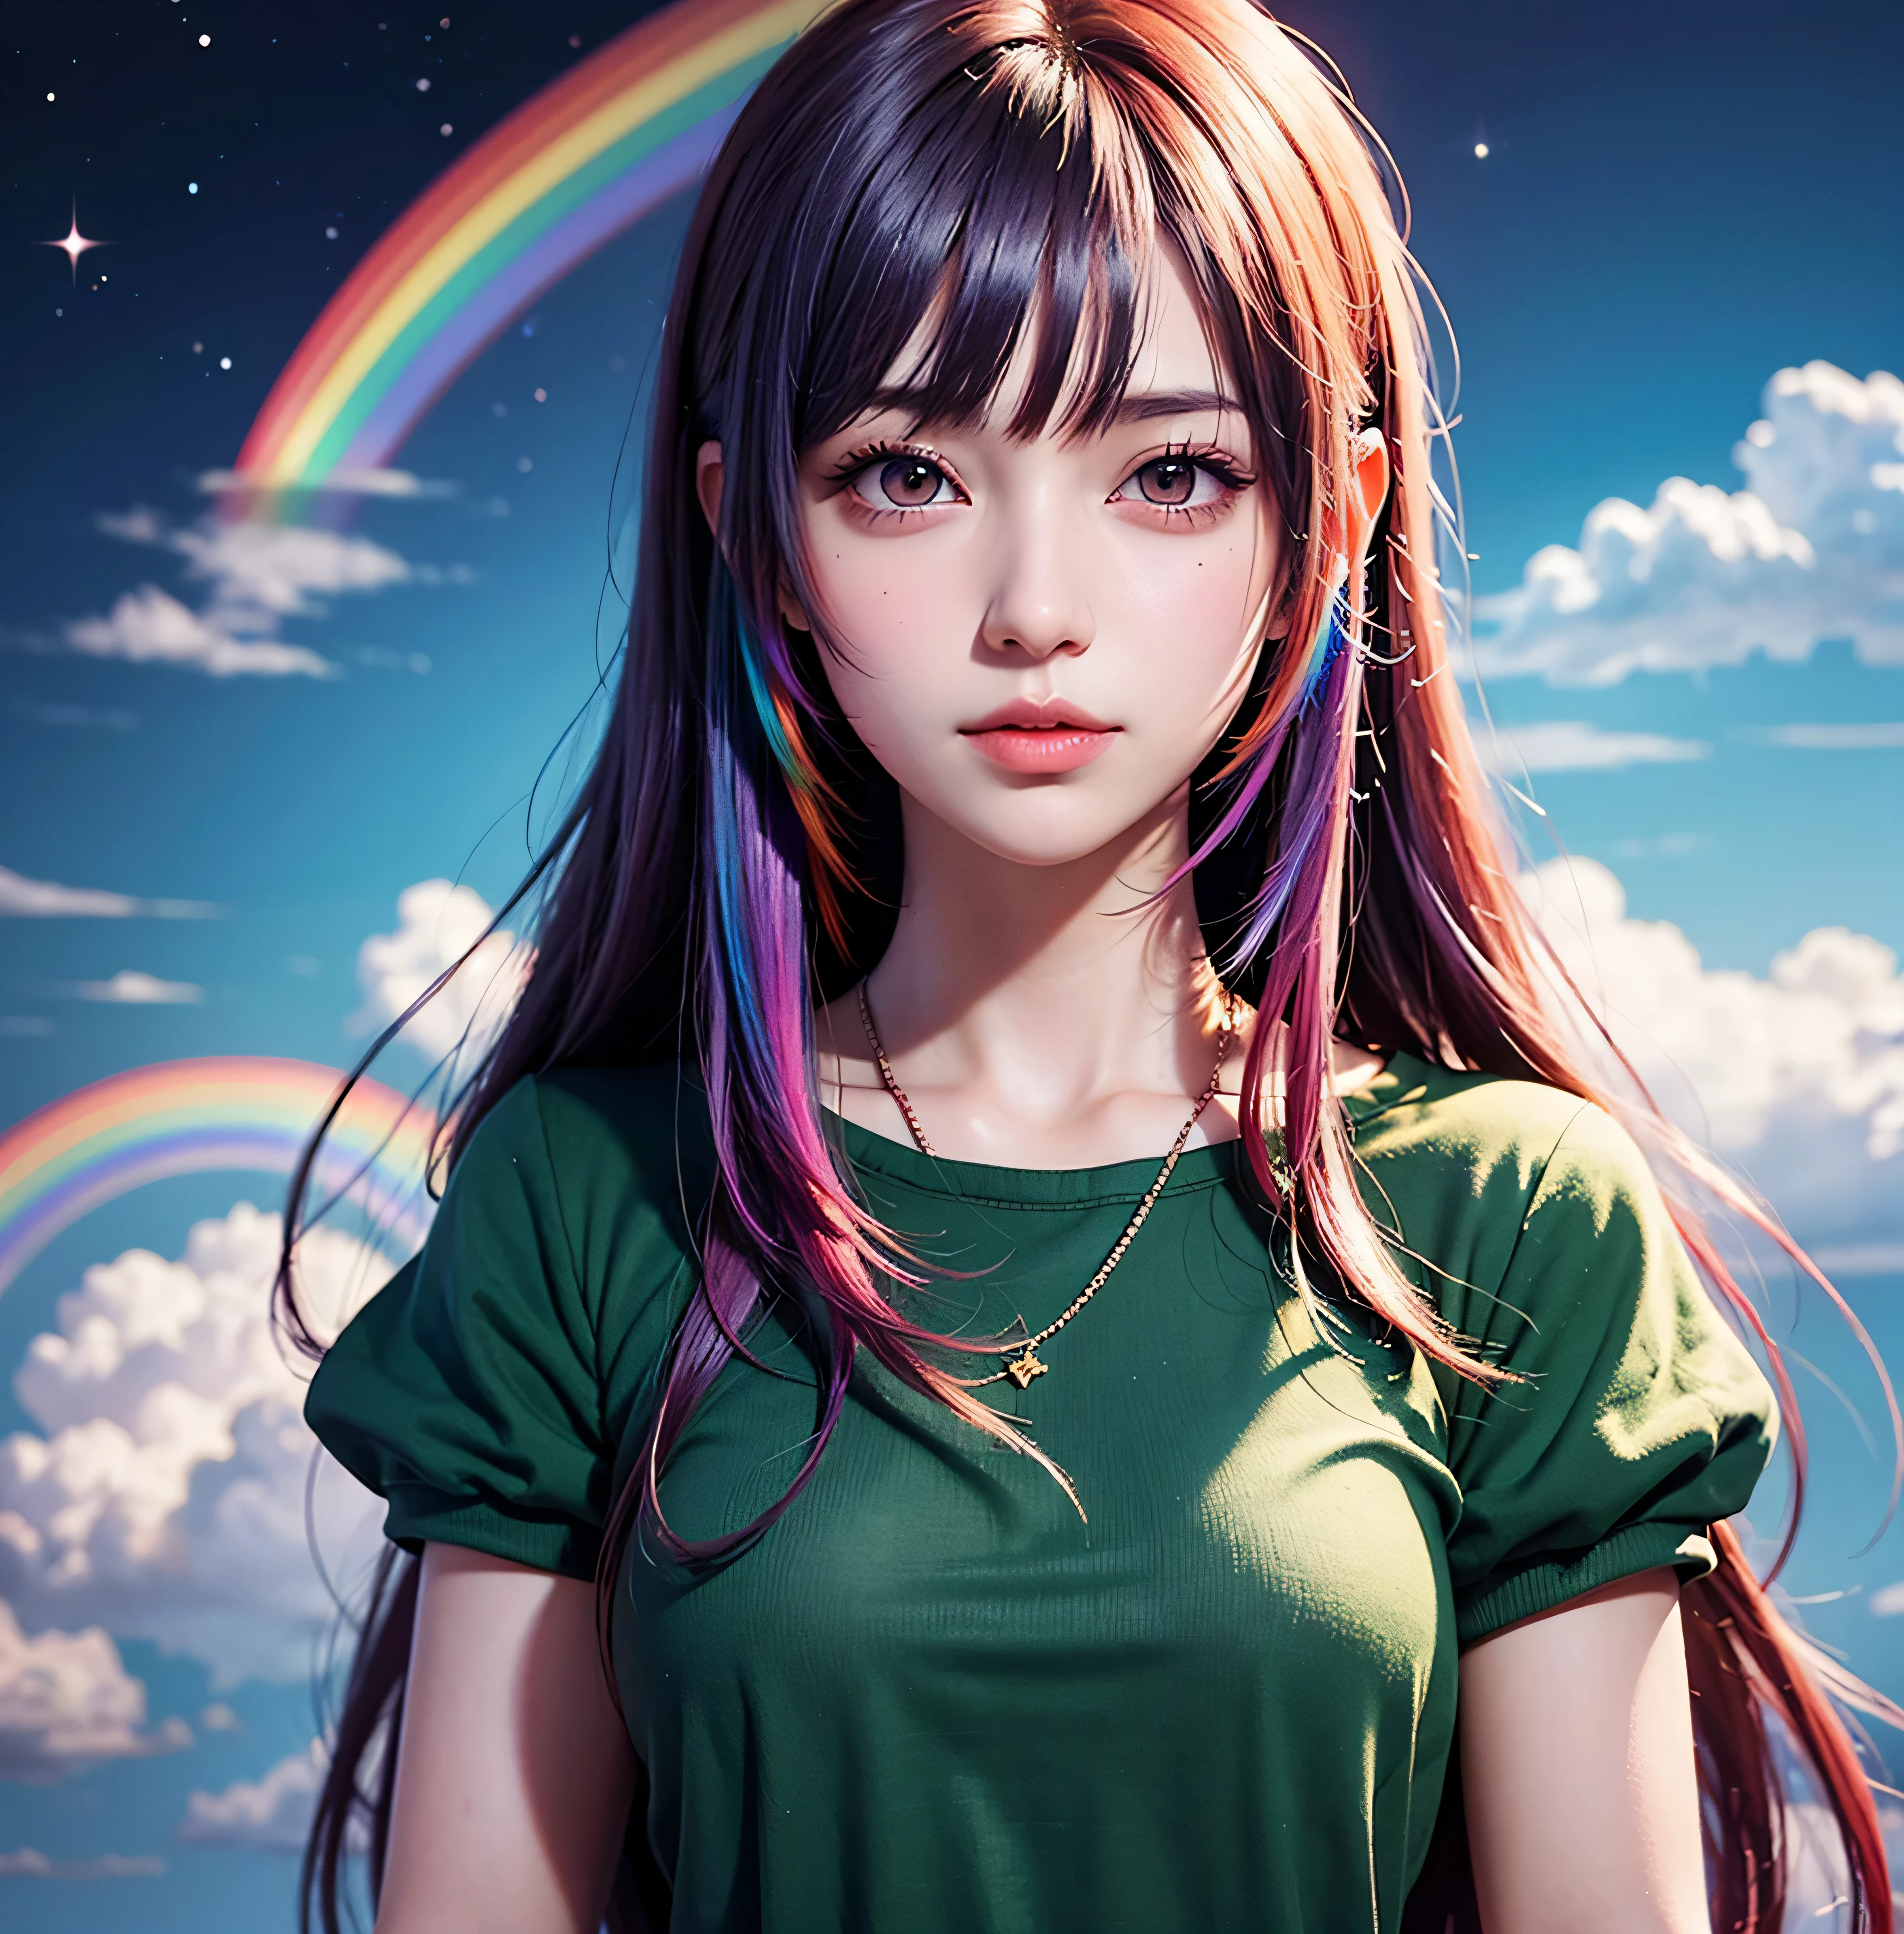 (Anime Frau + lange Haare + Porträt), (Haare färben + Regenbogen: 1.5 + Kosmisches Haar: 1.2), (Schönheit + Fantasie + Anime-Stil), (8k Hintergrundbild: 1.2 + 4K Hintergrundbild: 1.1), (Anime-Illustration + Kunst Stil + Kunst Kunstwerk)